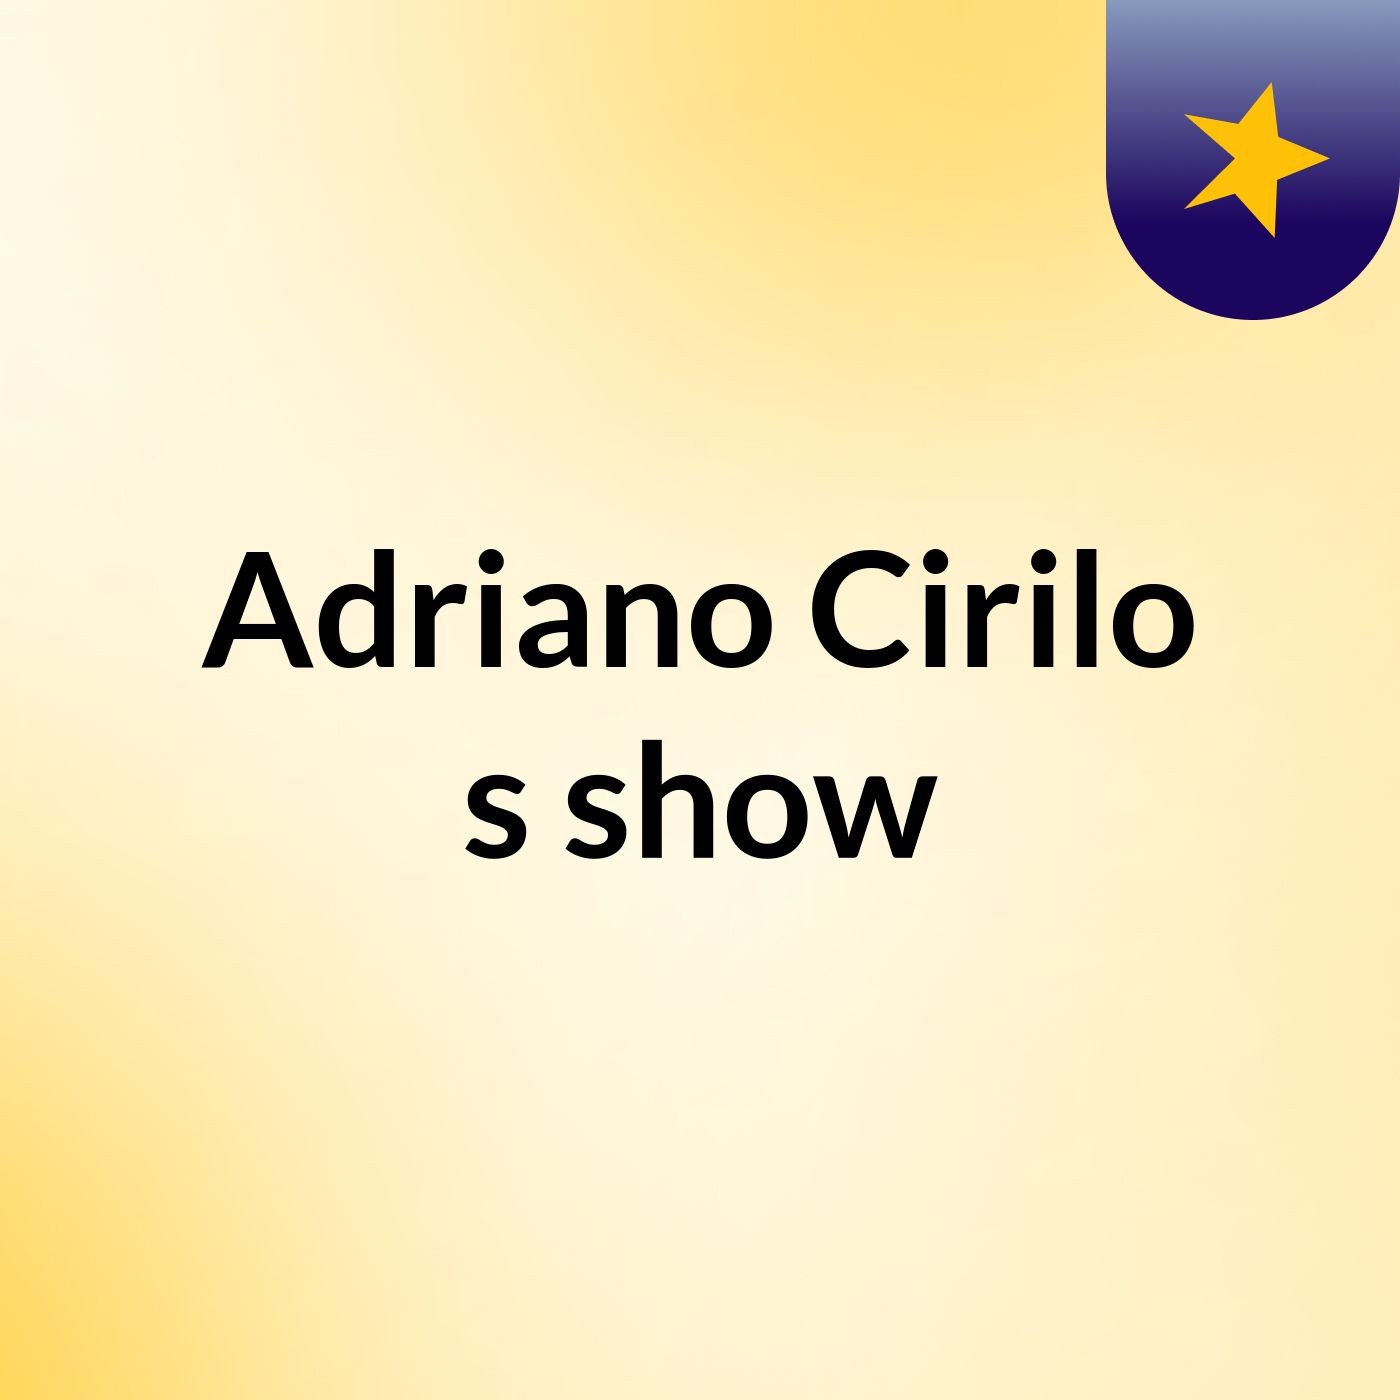 Adriano Cirilo's show